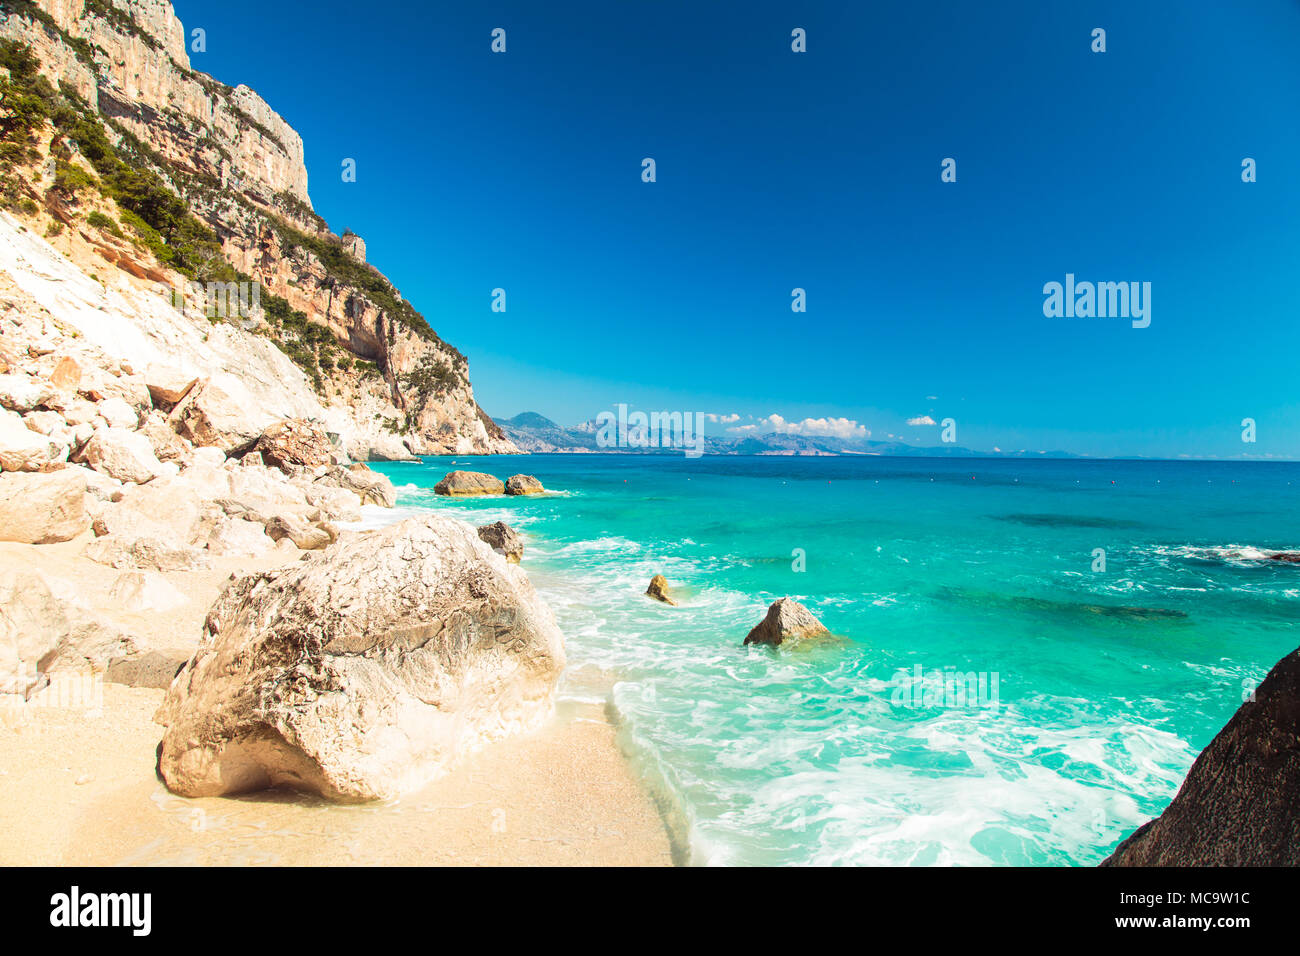 The beautiful bay in the Gulf of Orosei, Sardinia Stock Photo